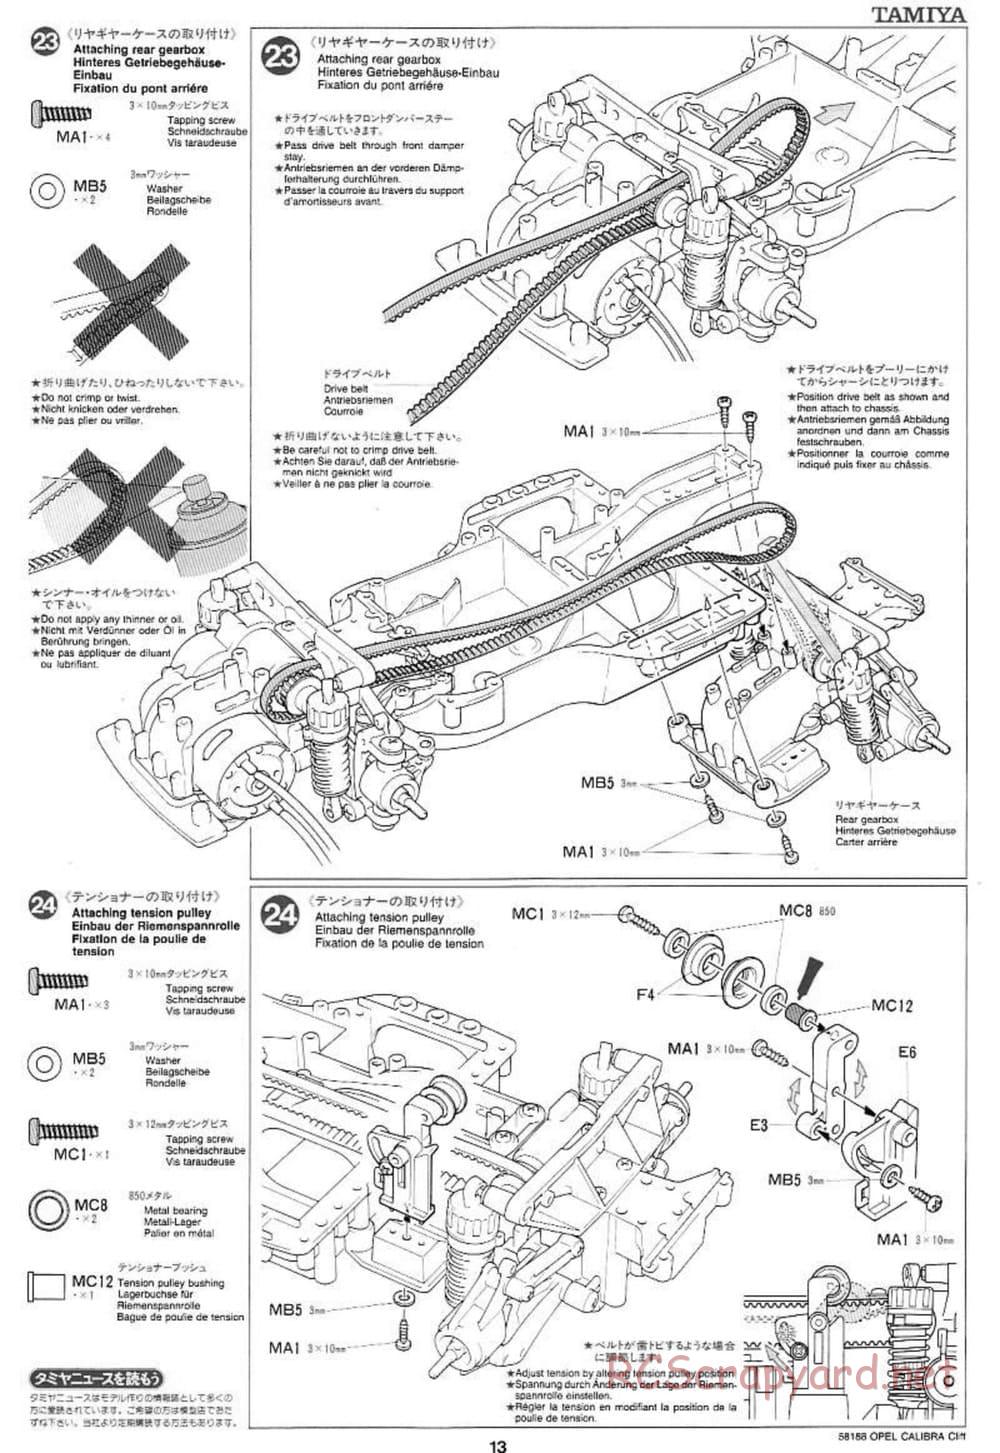 Tamiya - Opel Calibra Cliff - TA-03F Chassis - Manual - Page 13